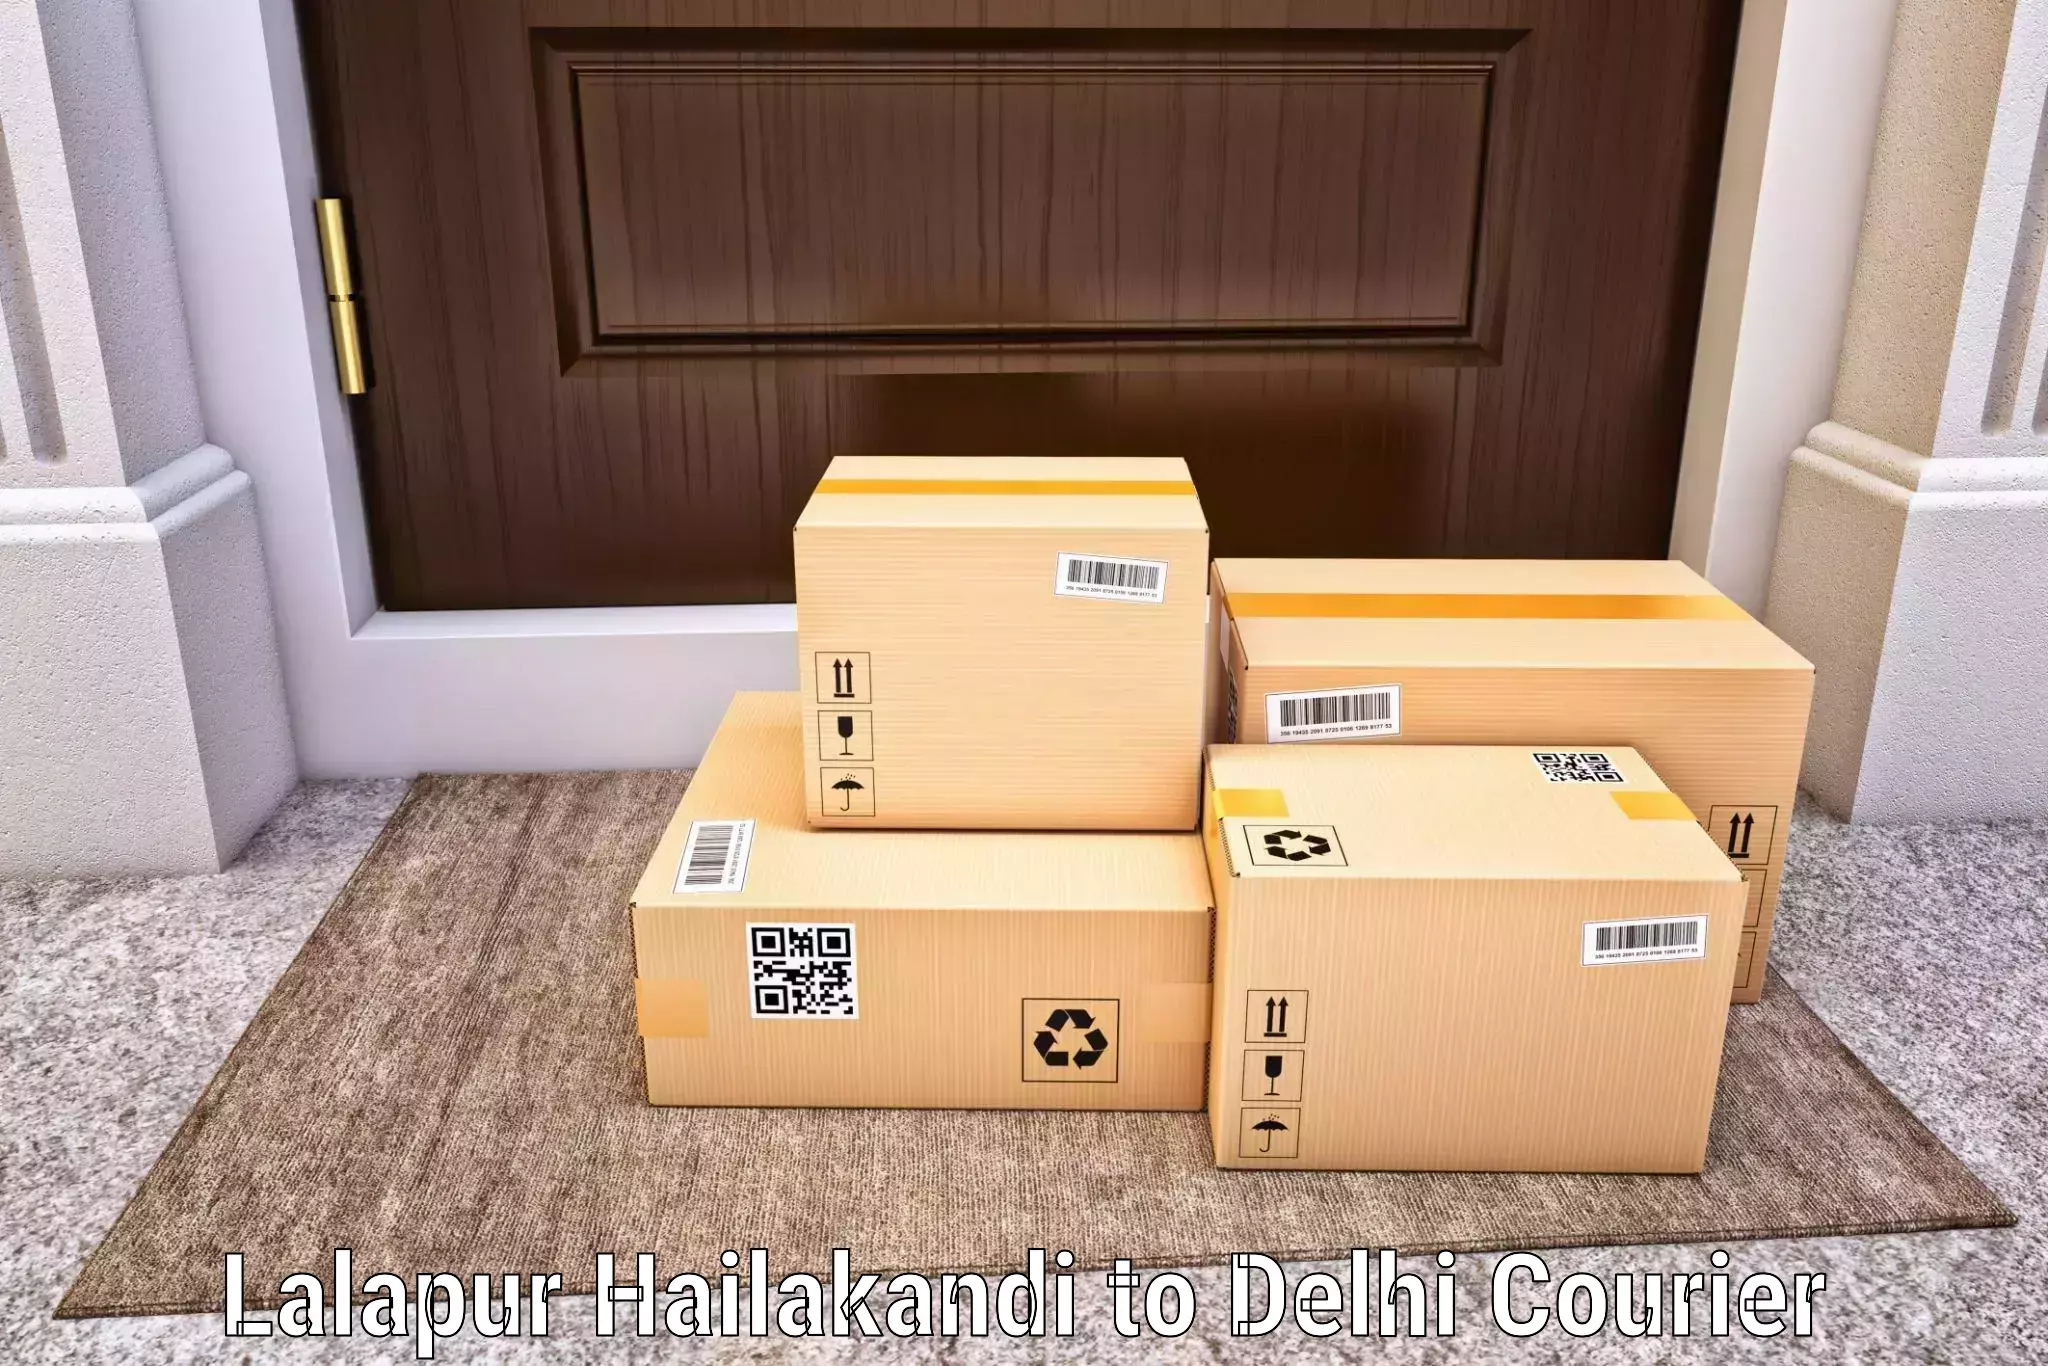 Optimized shipping routes Lalapur Hailakandi to Delhi Technological University DTU